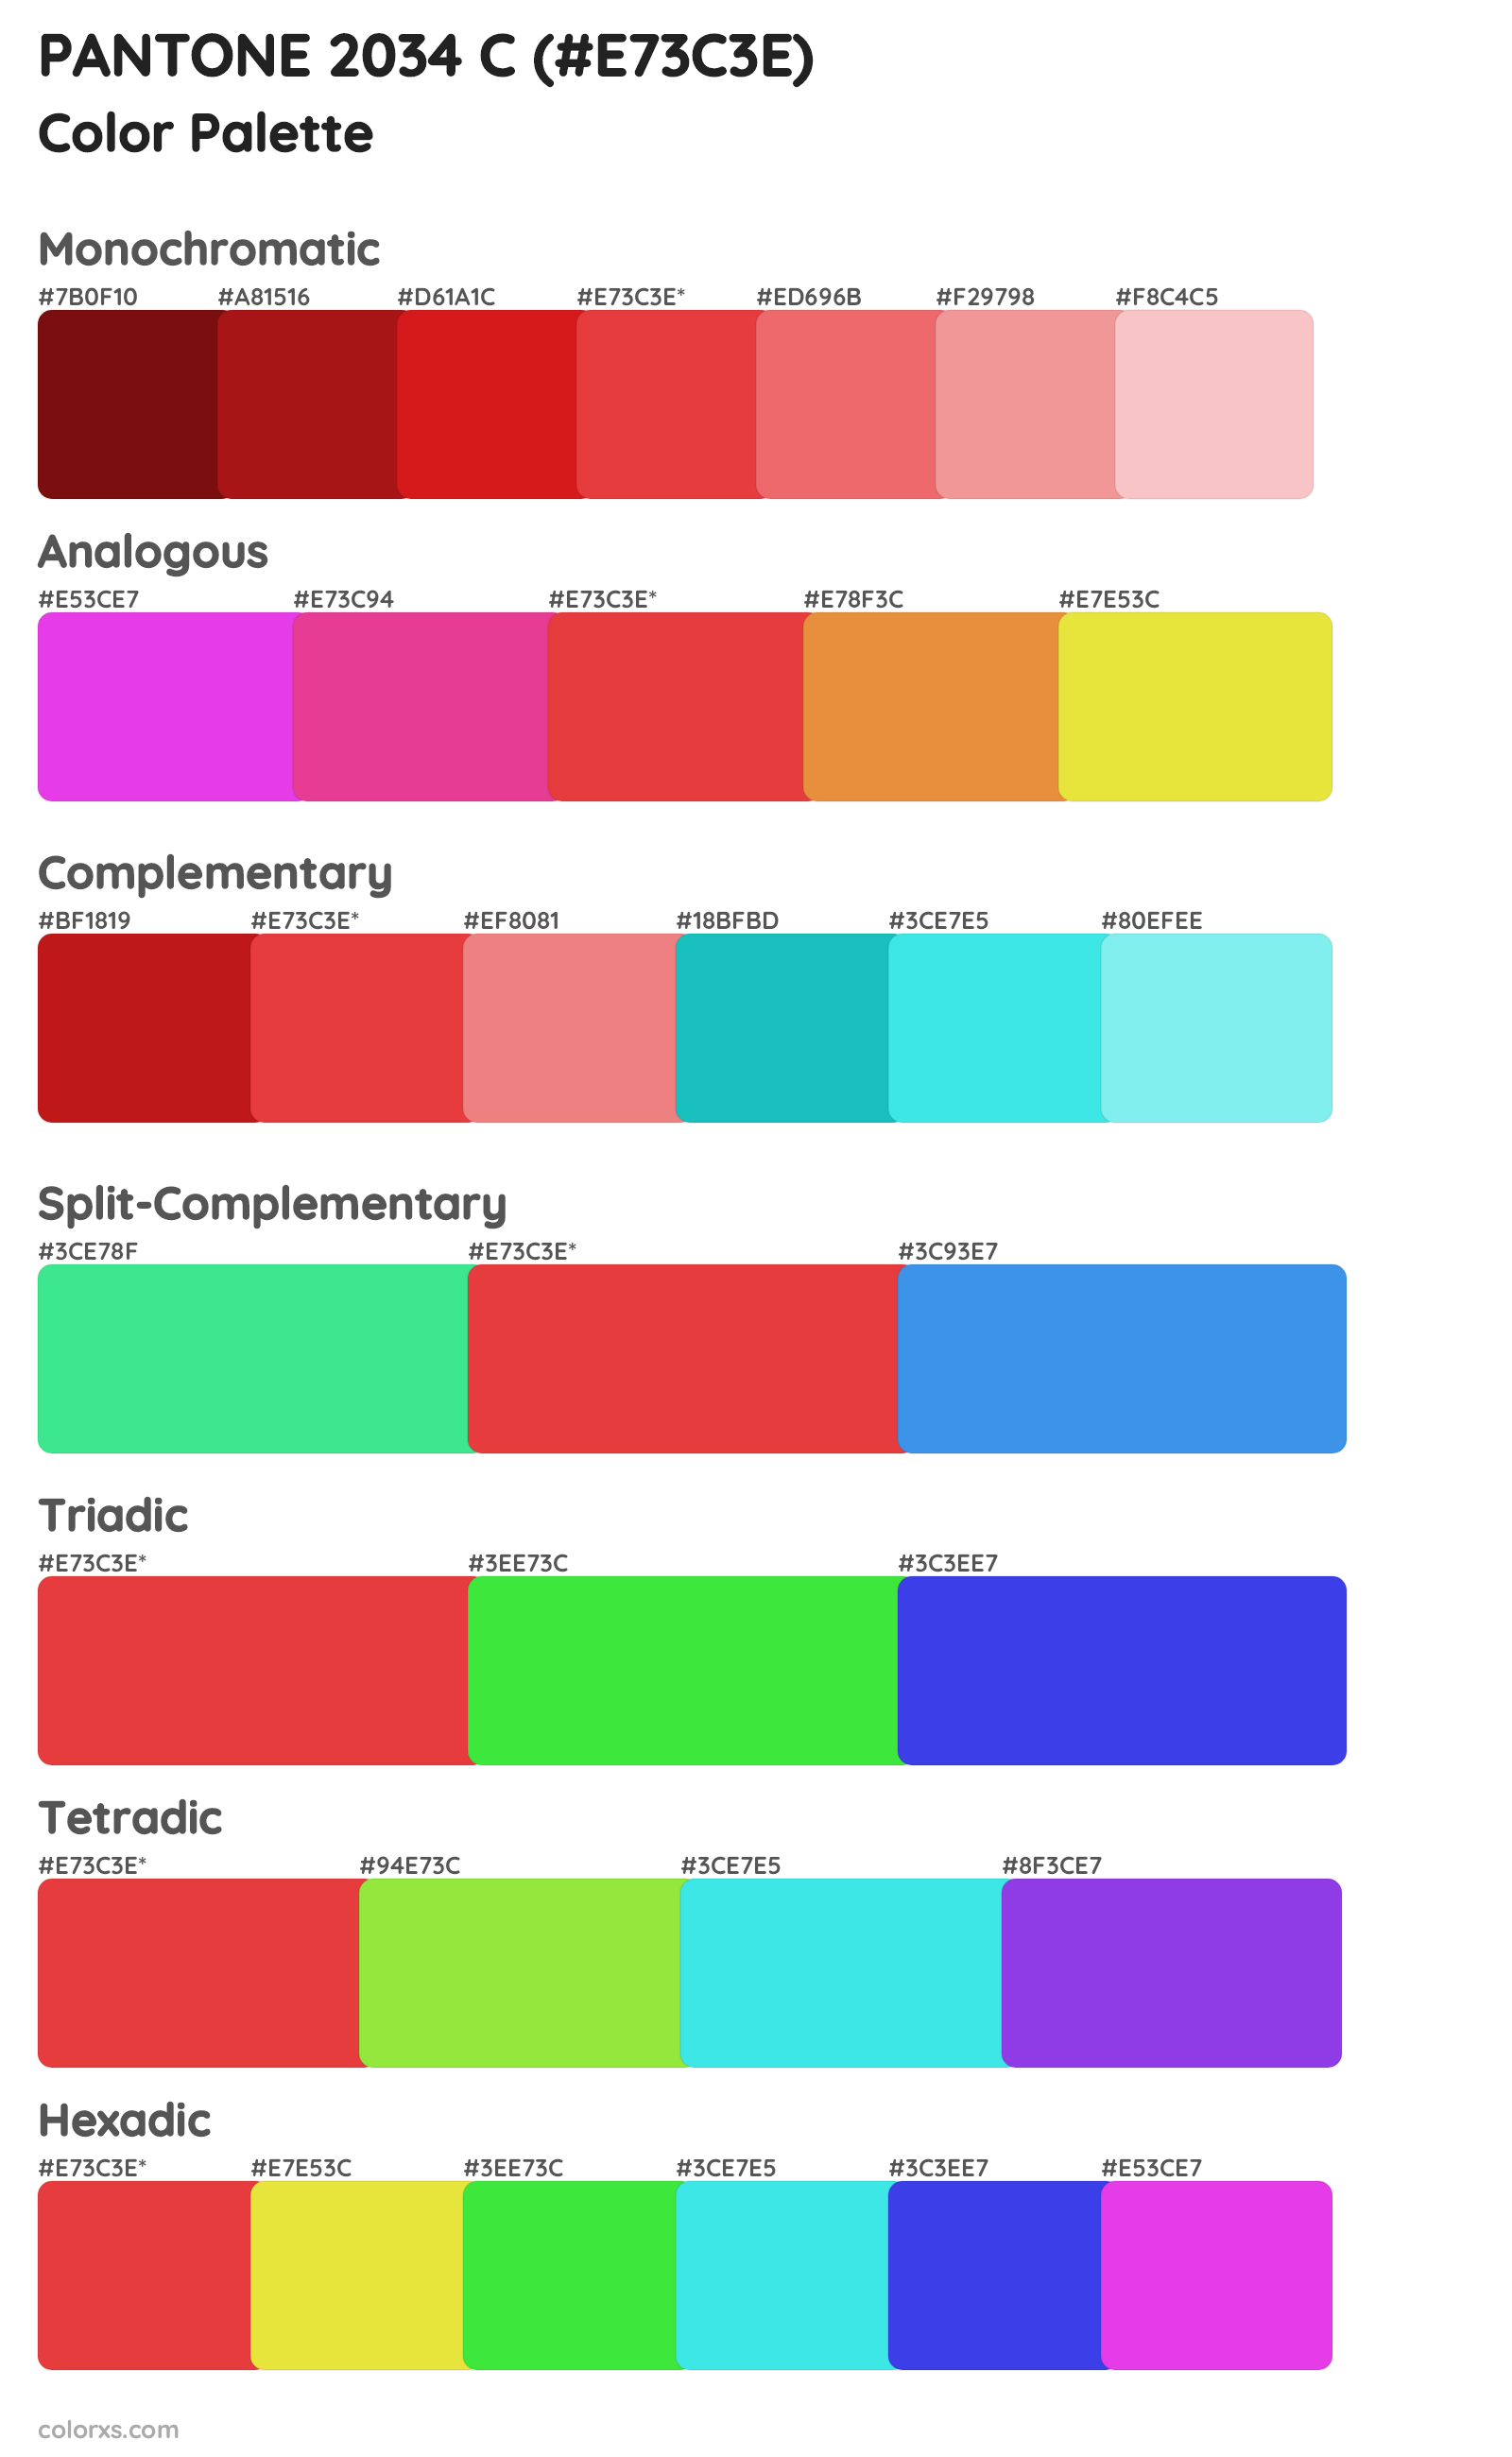 PANTONE 2034 C Color Scheme Palettes